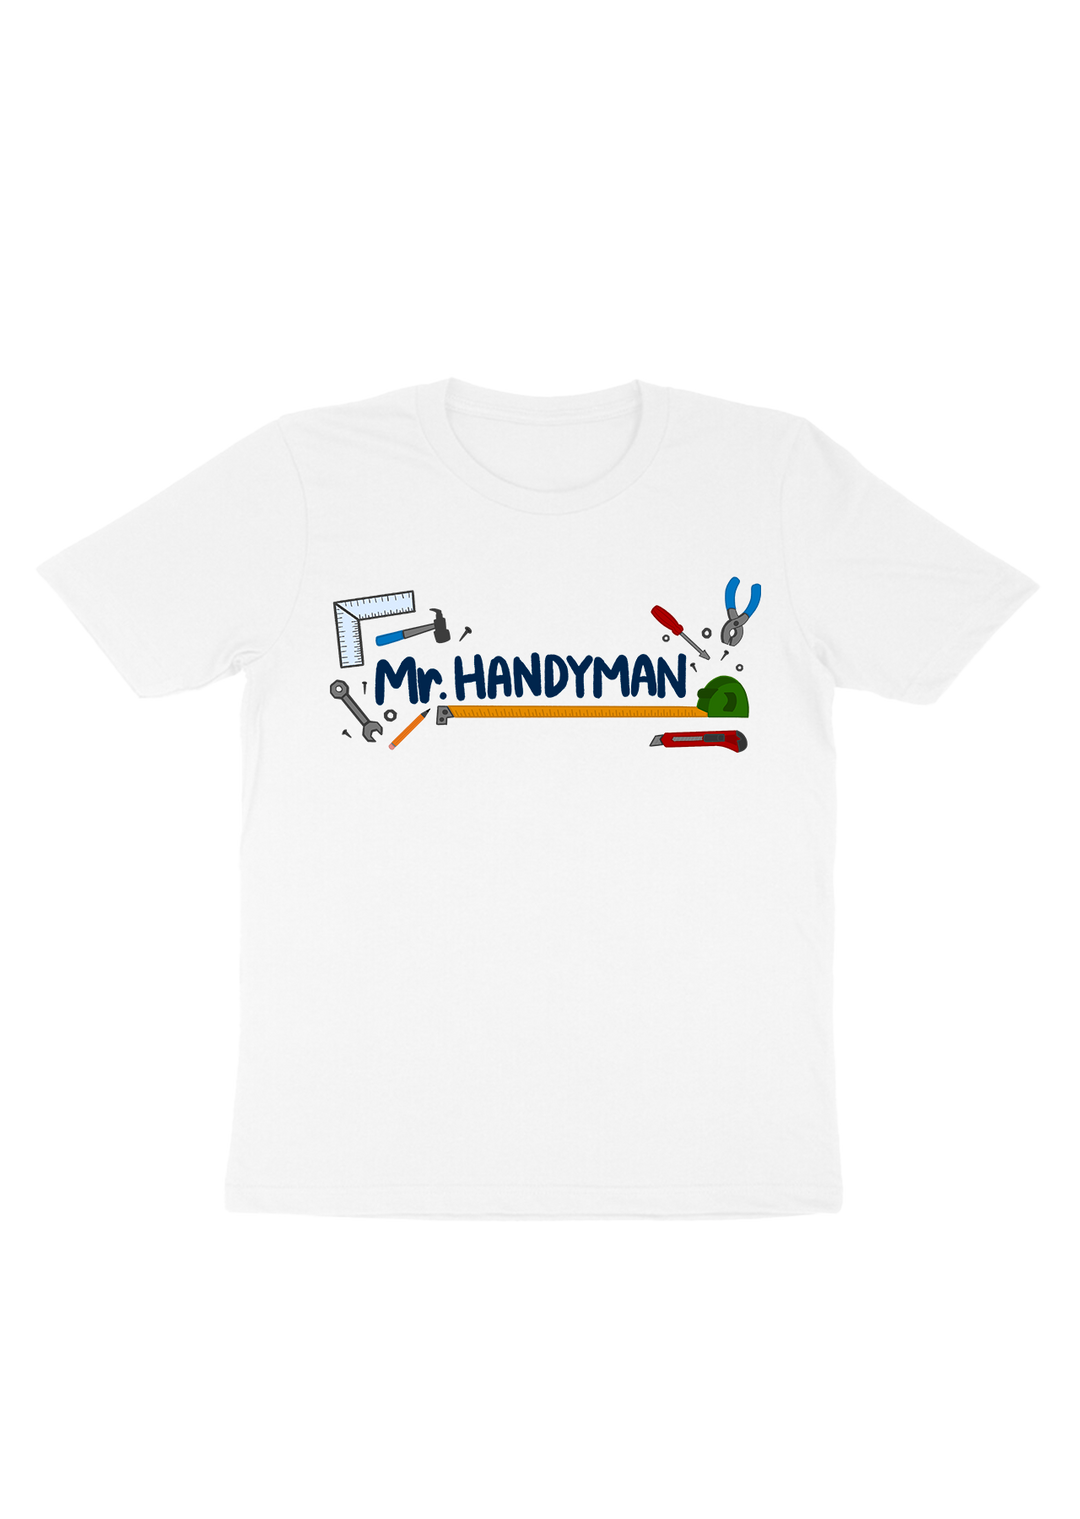 Mr.Handyman T-shirt